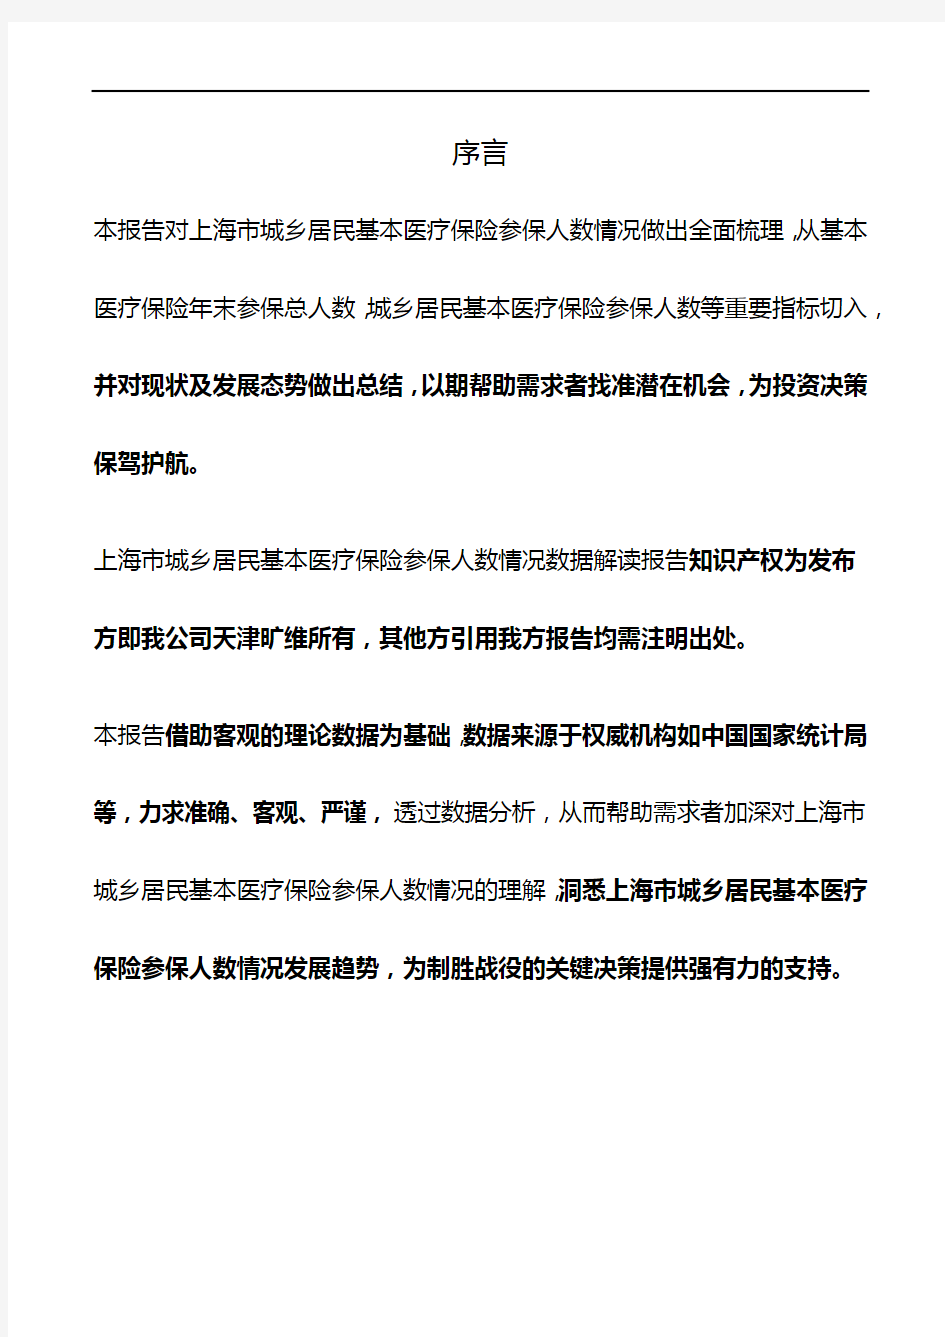 上海市城乡居民基本医疗保险参保人数情况3年数据解读报告2019版